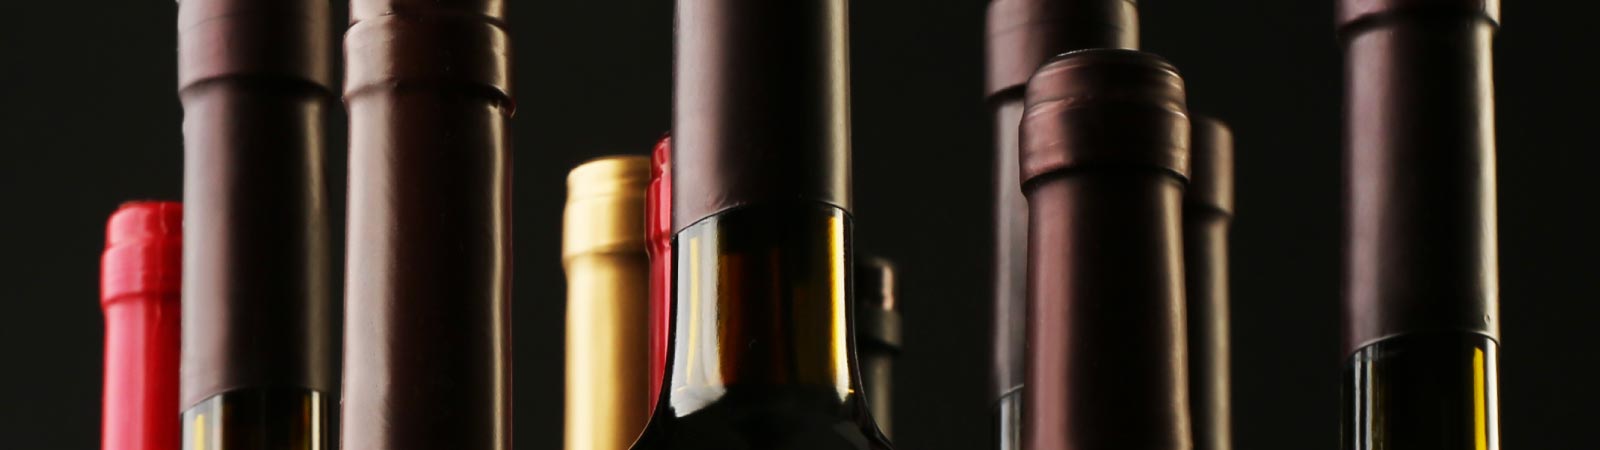 necks of wine bottles